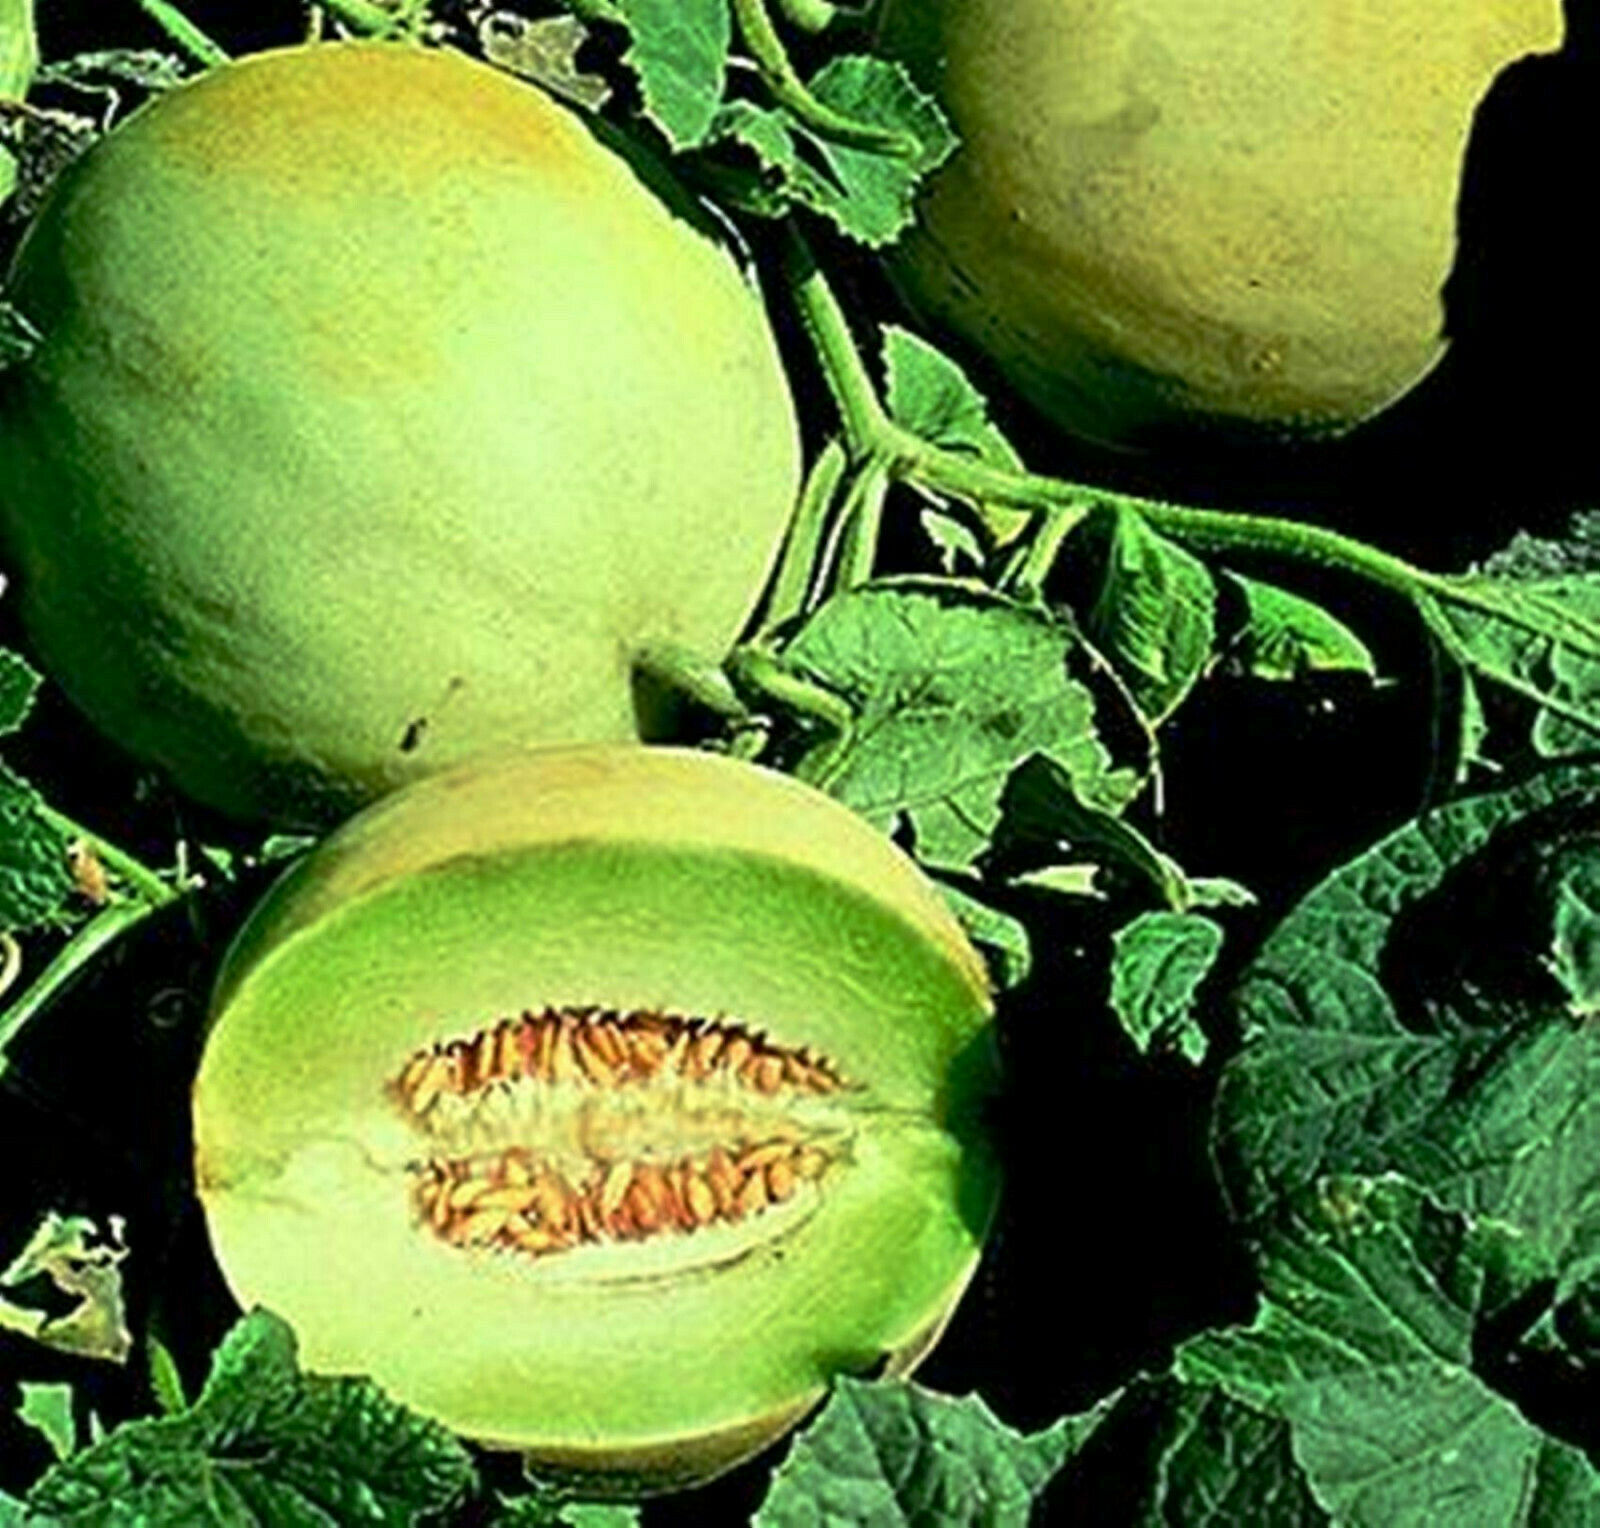 Jumbo Honeydew Melon Sweet Fruits -10 Seeds - White Antibes Cultivar Muskmelons